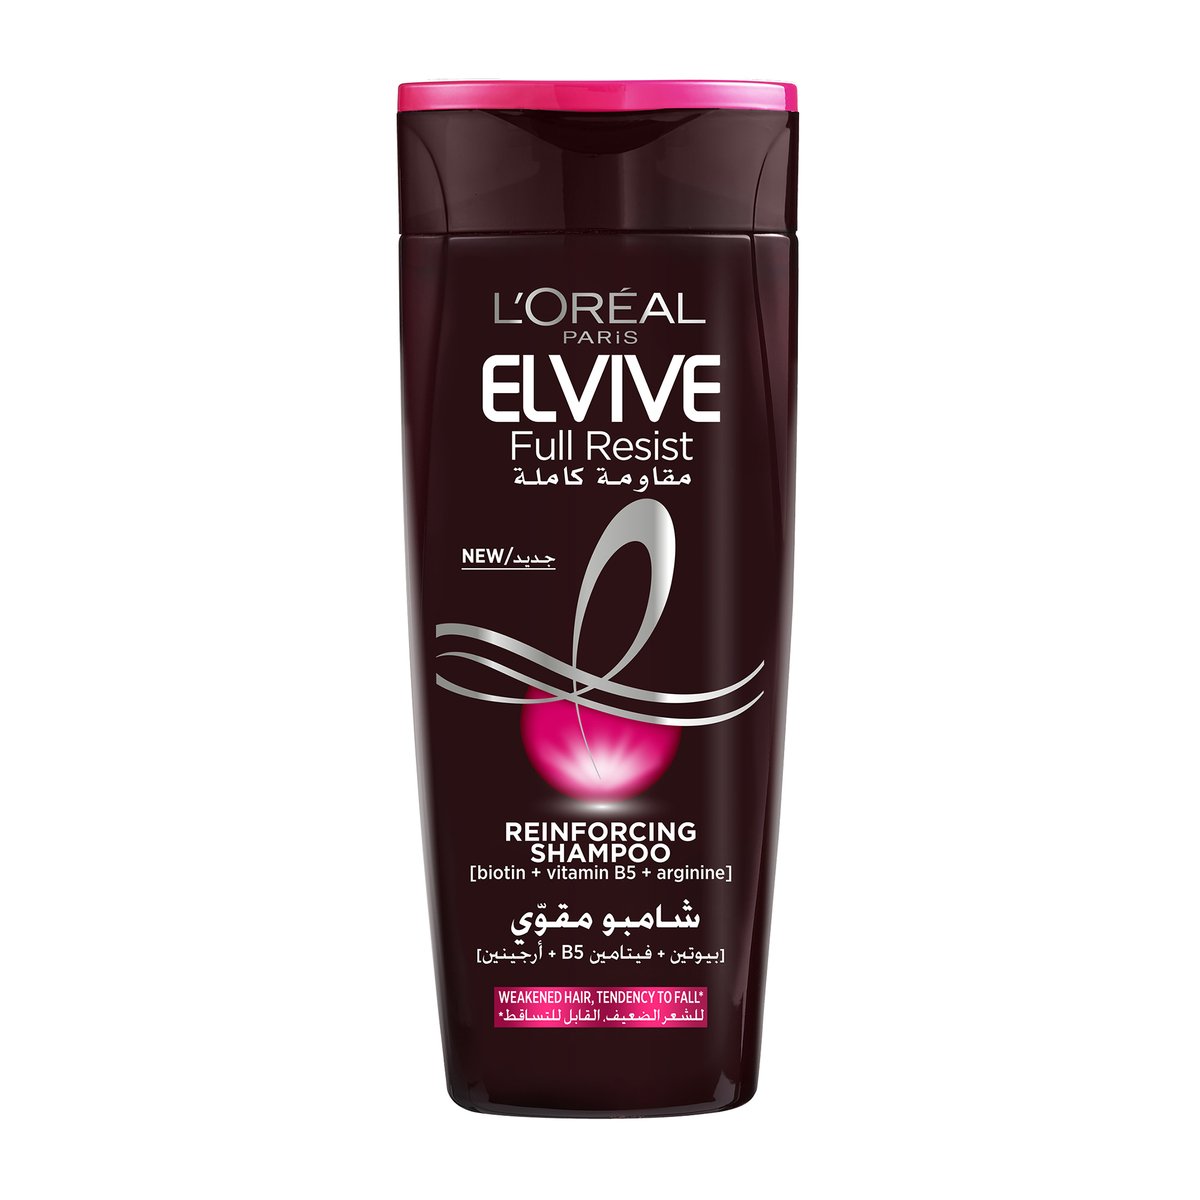 L'Oreal Elvive Full Resist Reinforcing Shampoo, 600 ml